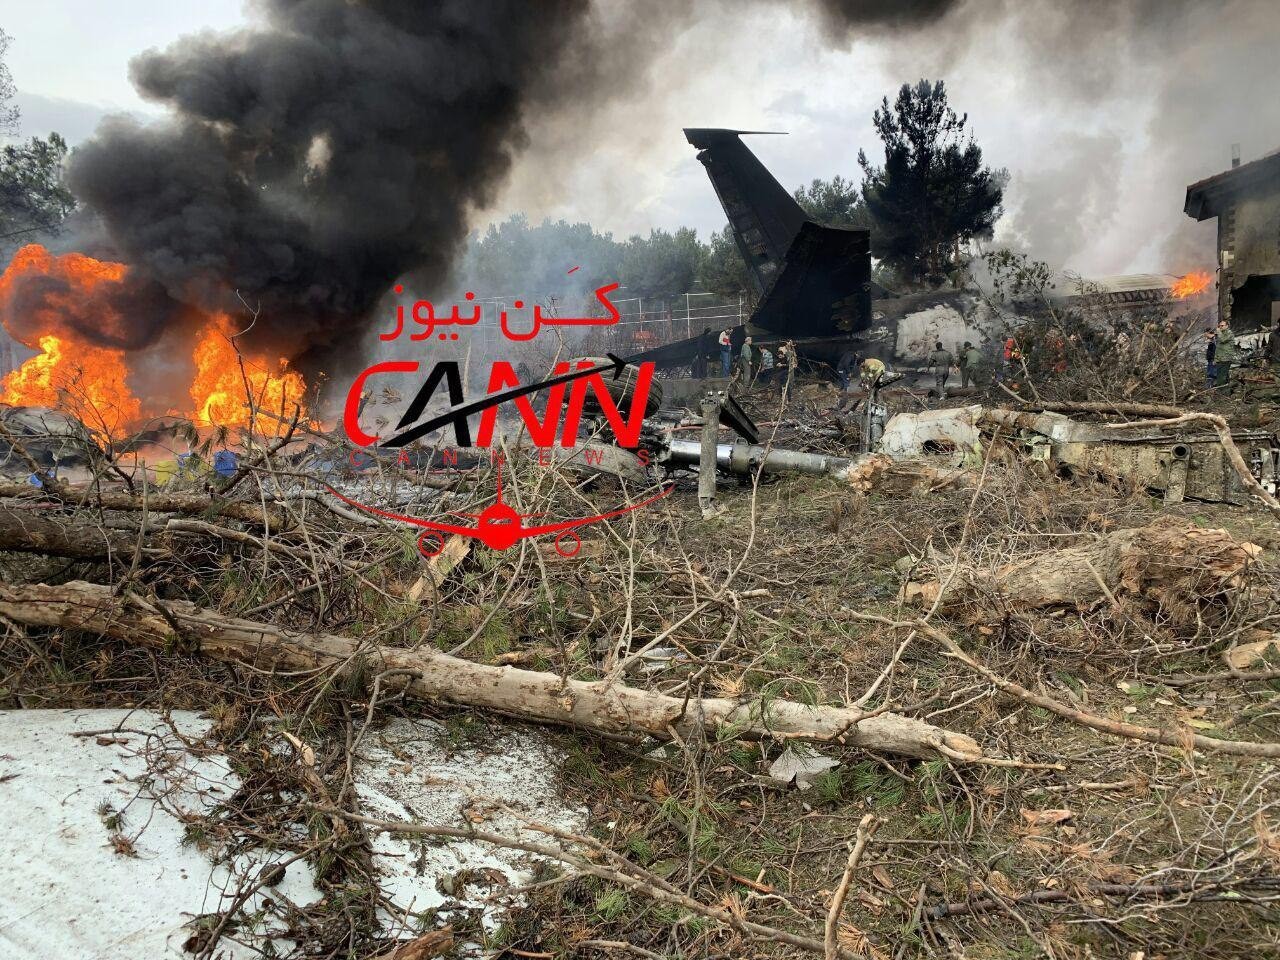 سقوط هواپیما حوالی صفادشت تهران + عکس